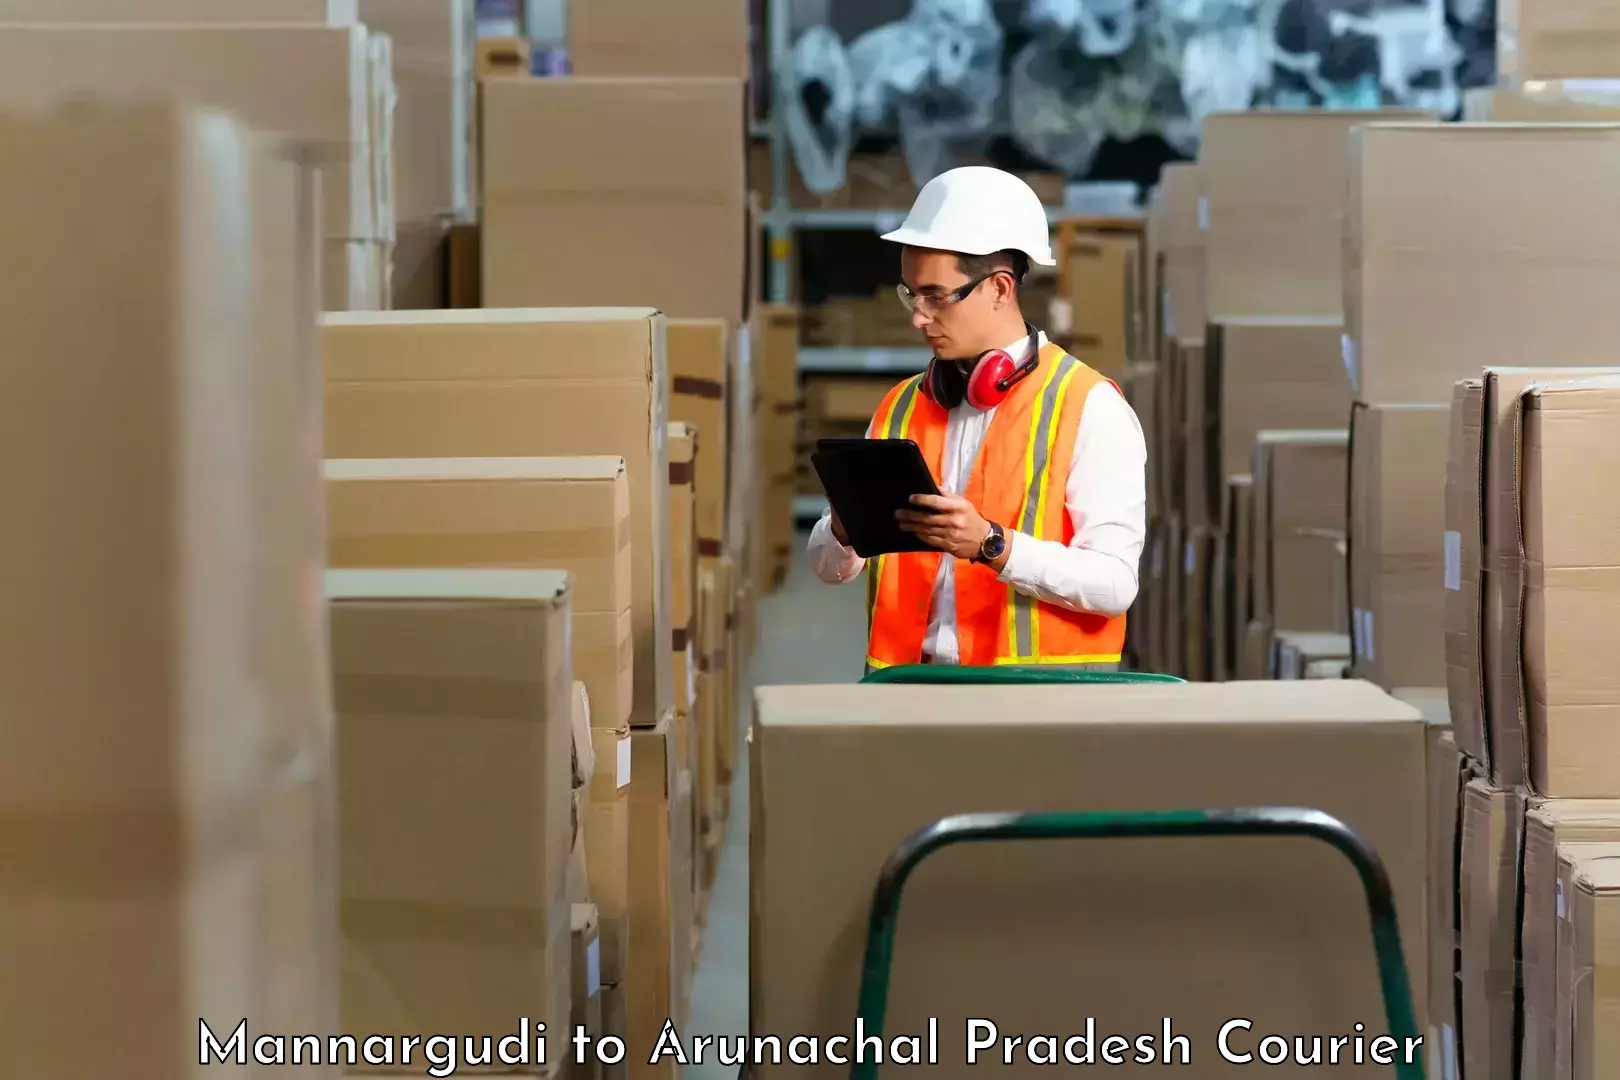 Efficient cargo handling in Mannargudi to Sagalee